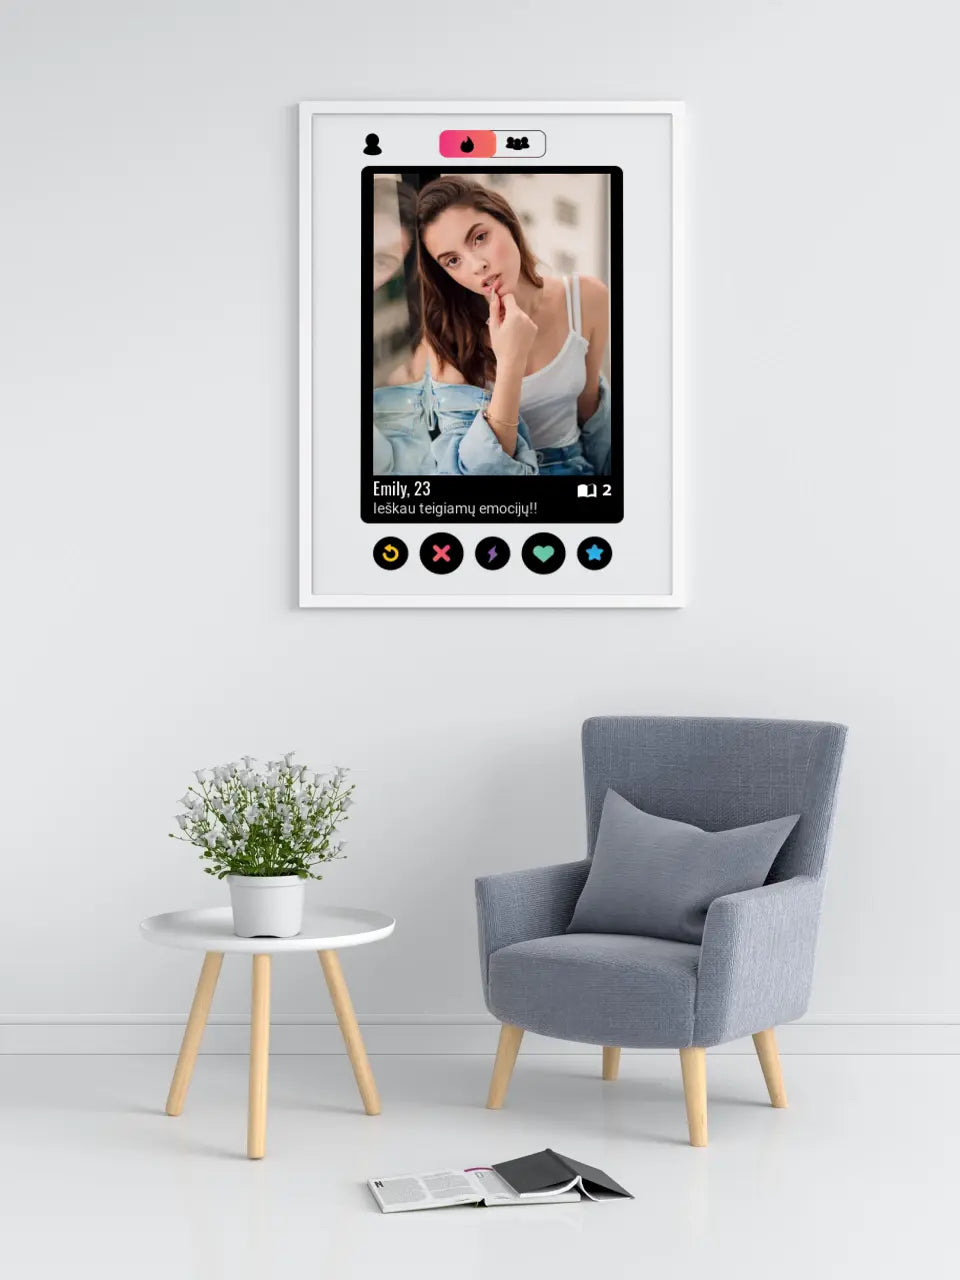 Personalizuotas "Tinder" dizaino įrėmintas plakatas su jūsų nuotrauka ir tekstu